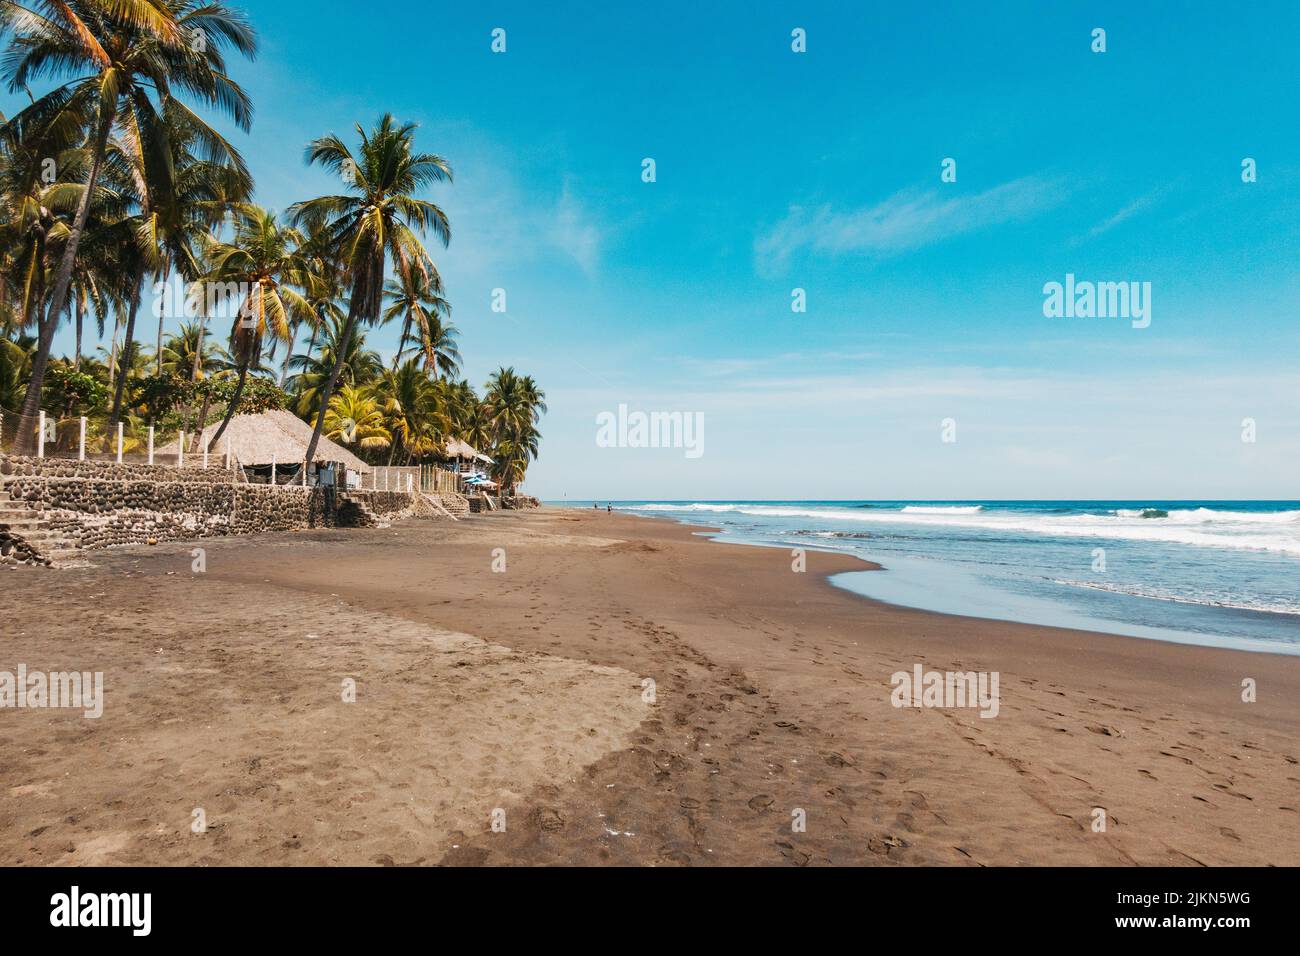 La plage d'El Zonte, également connue sous le nom de Bitcoin Beach, sur la côte Pacifique d'El Salvador Banque D'Images